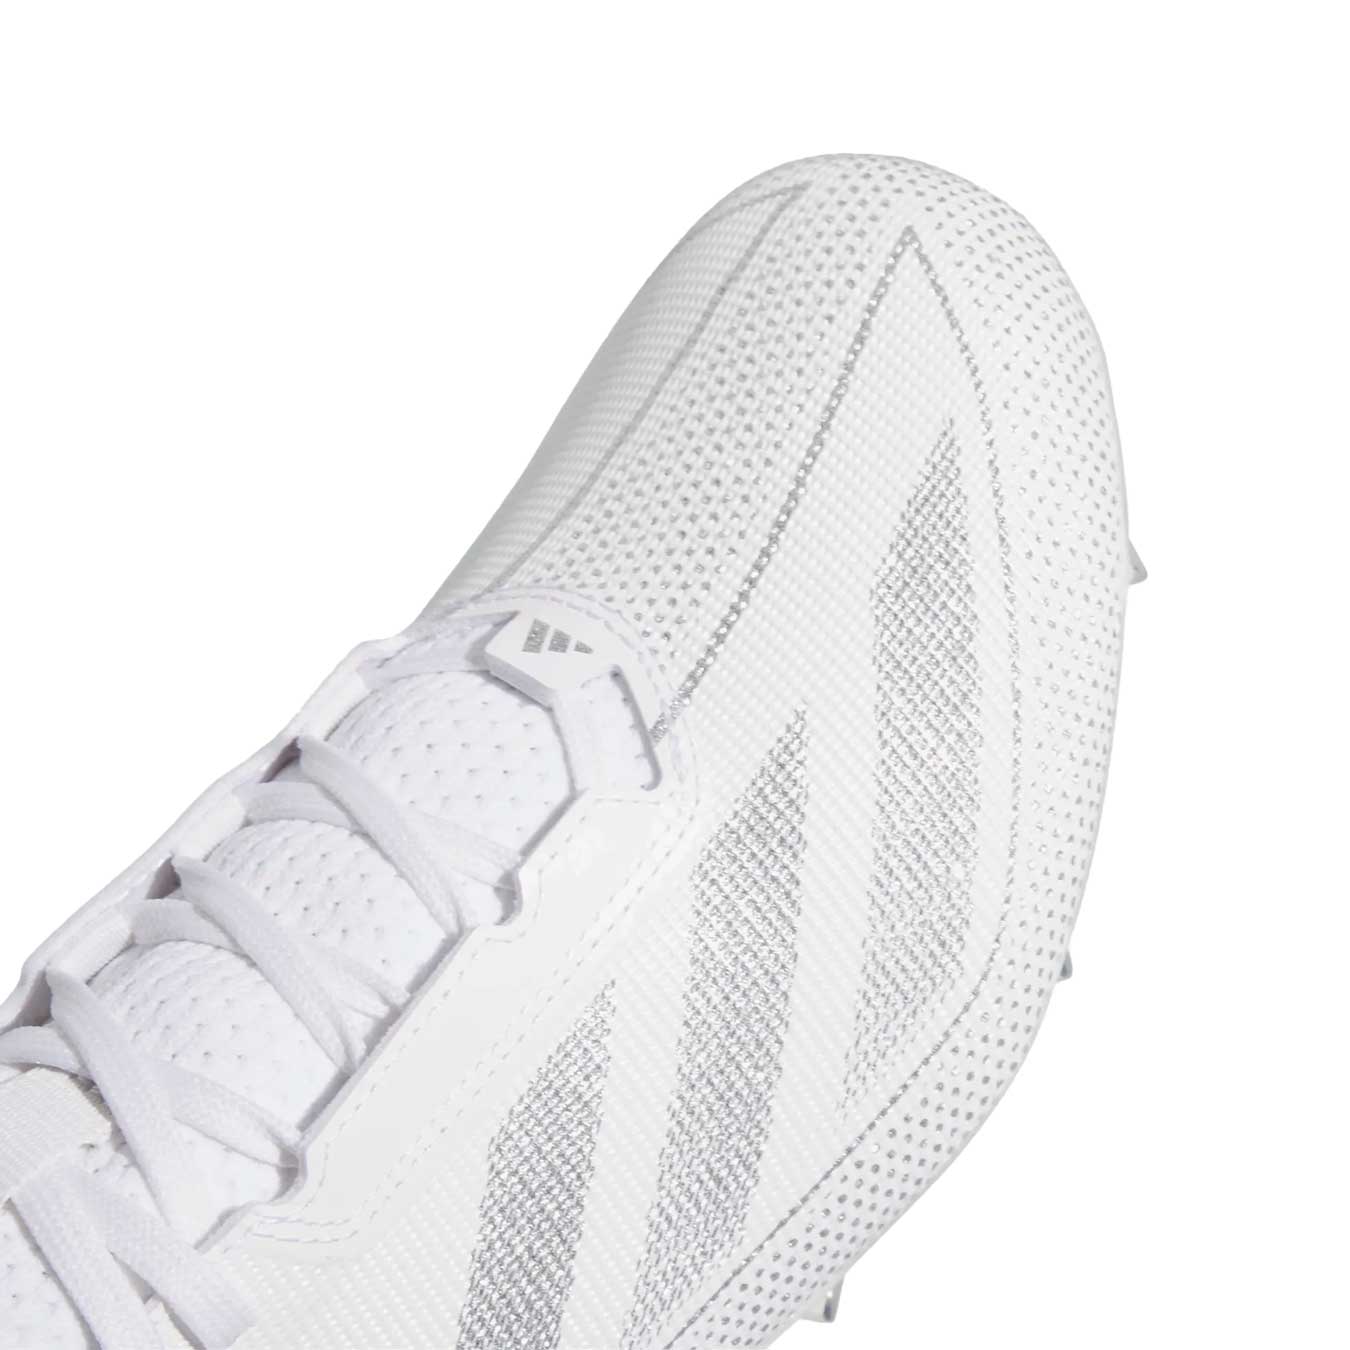 Adidas adizero Electric.1 White/Silver Cleats